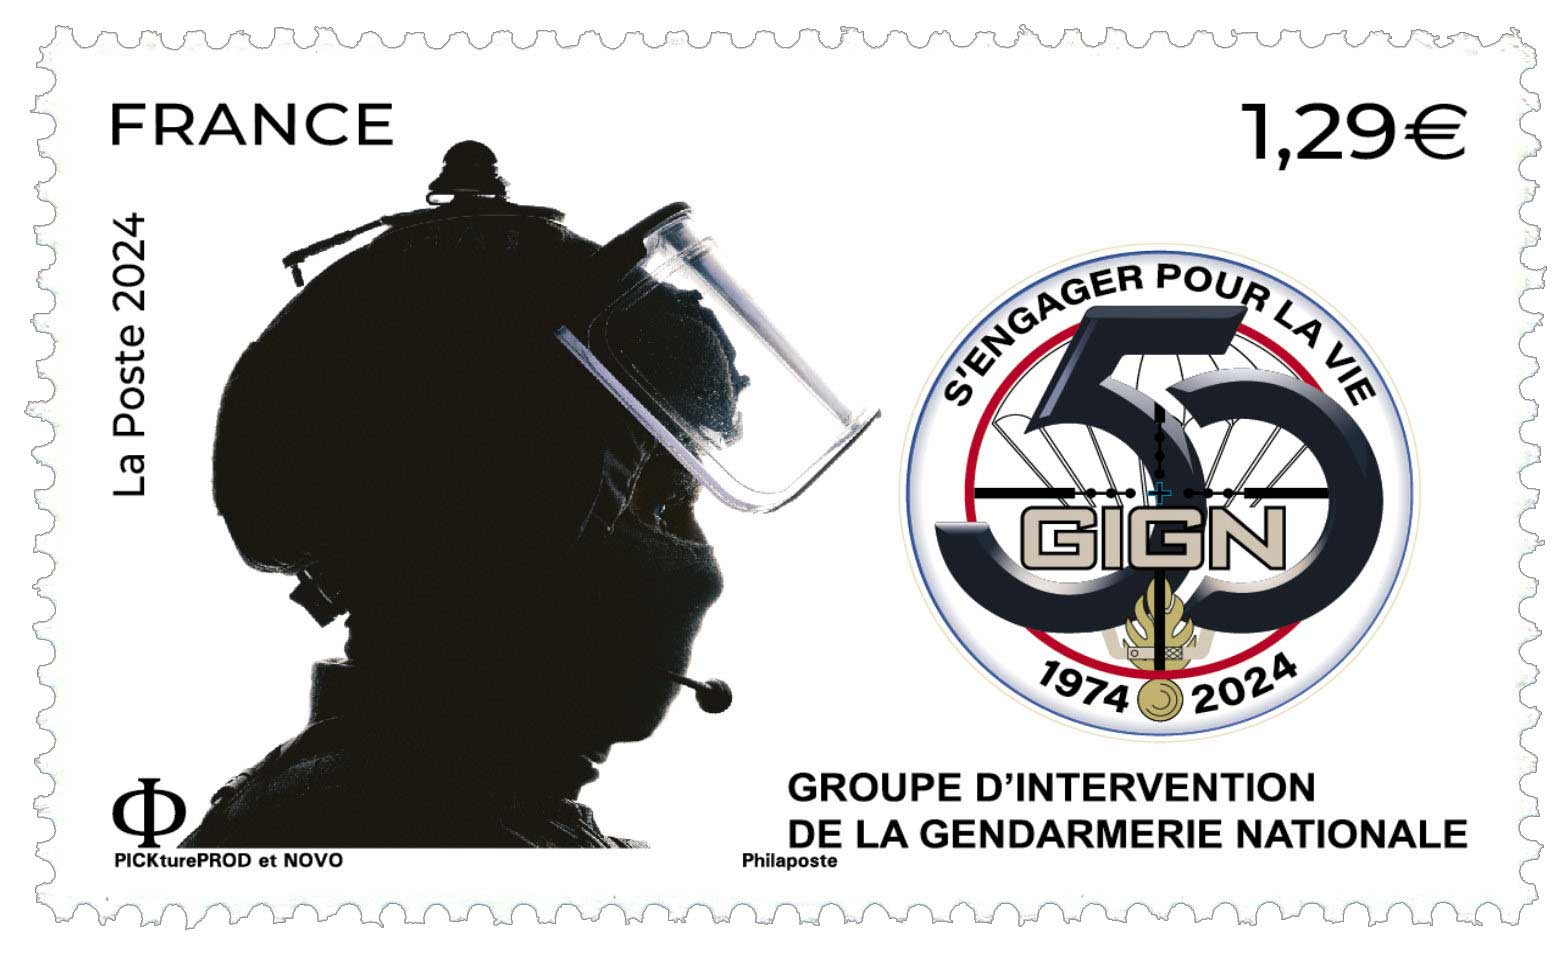 GIGN - GROUPE D’INTERVENTION DE LA GENDARMERIE  NATIONALE 1974 - 2024